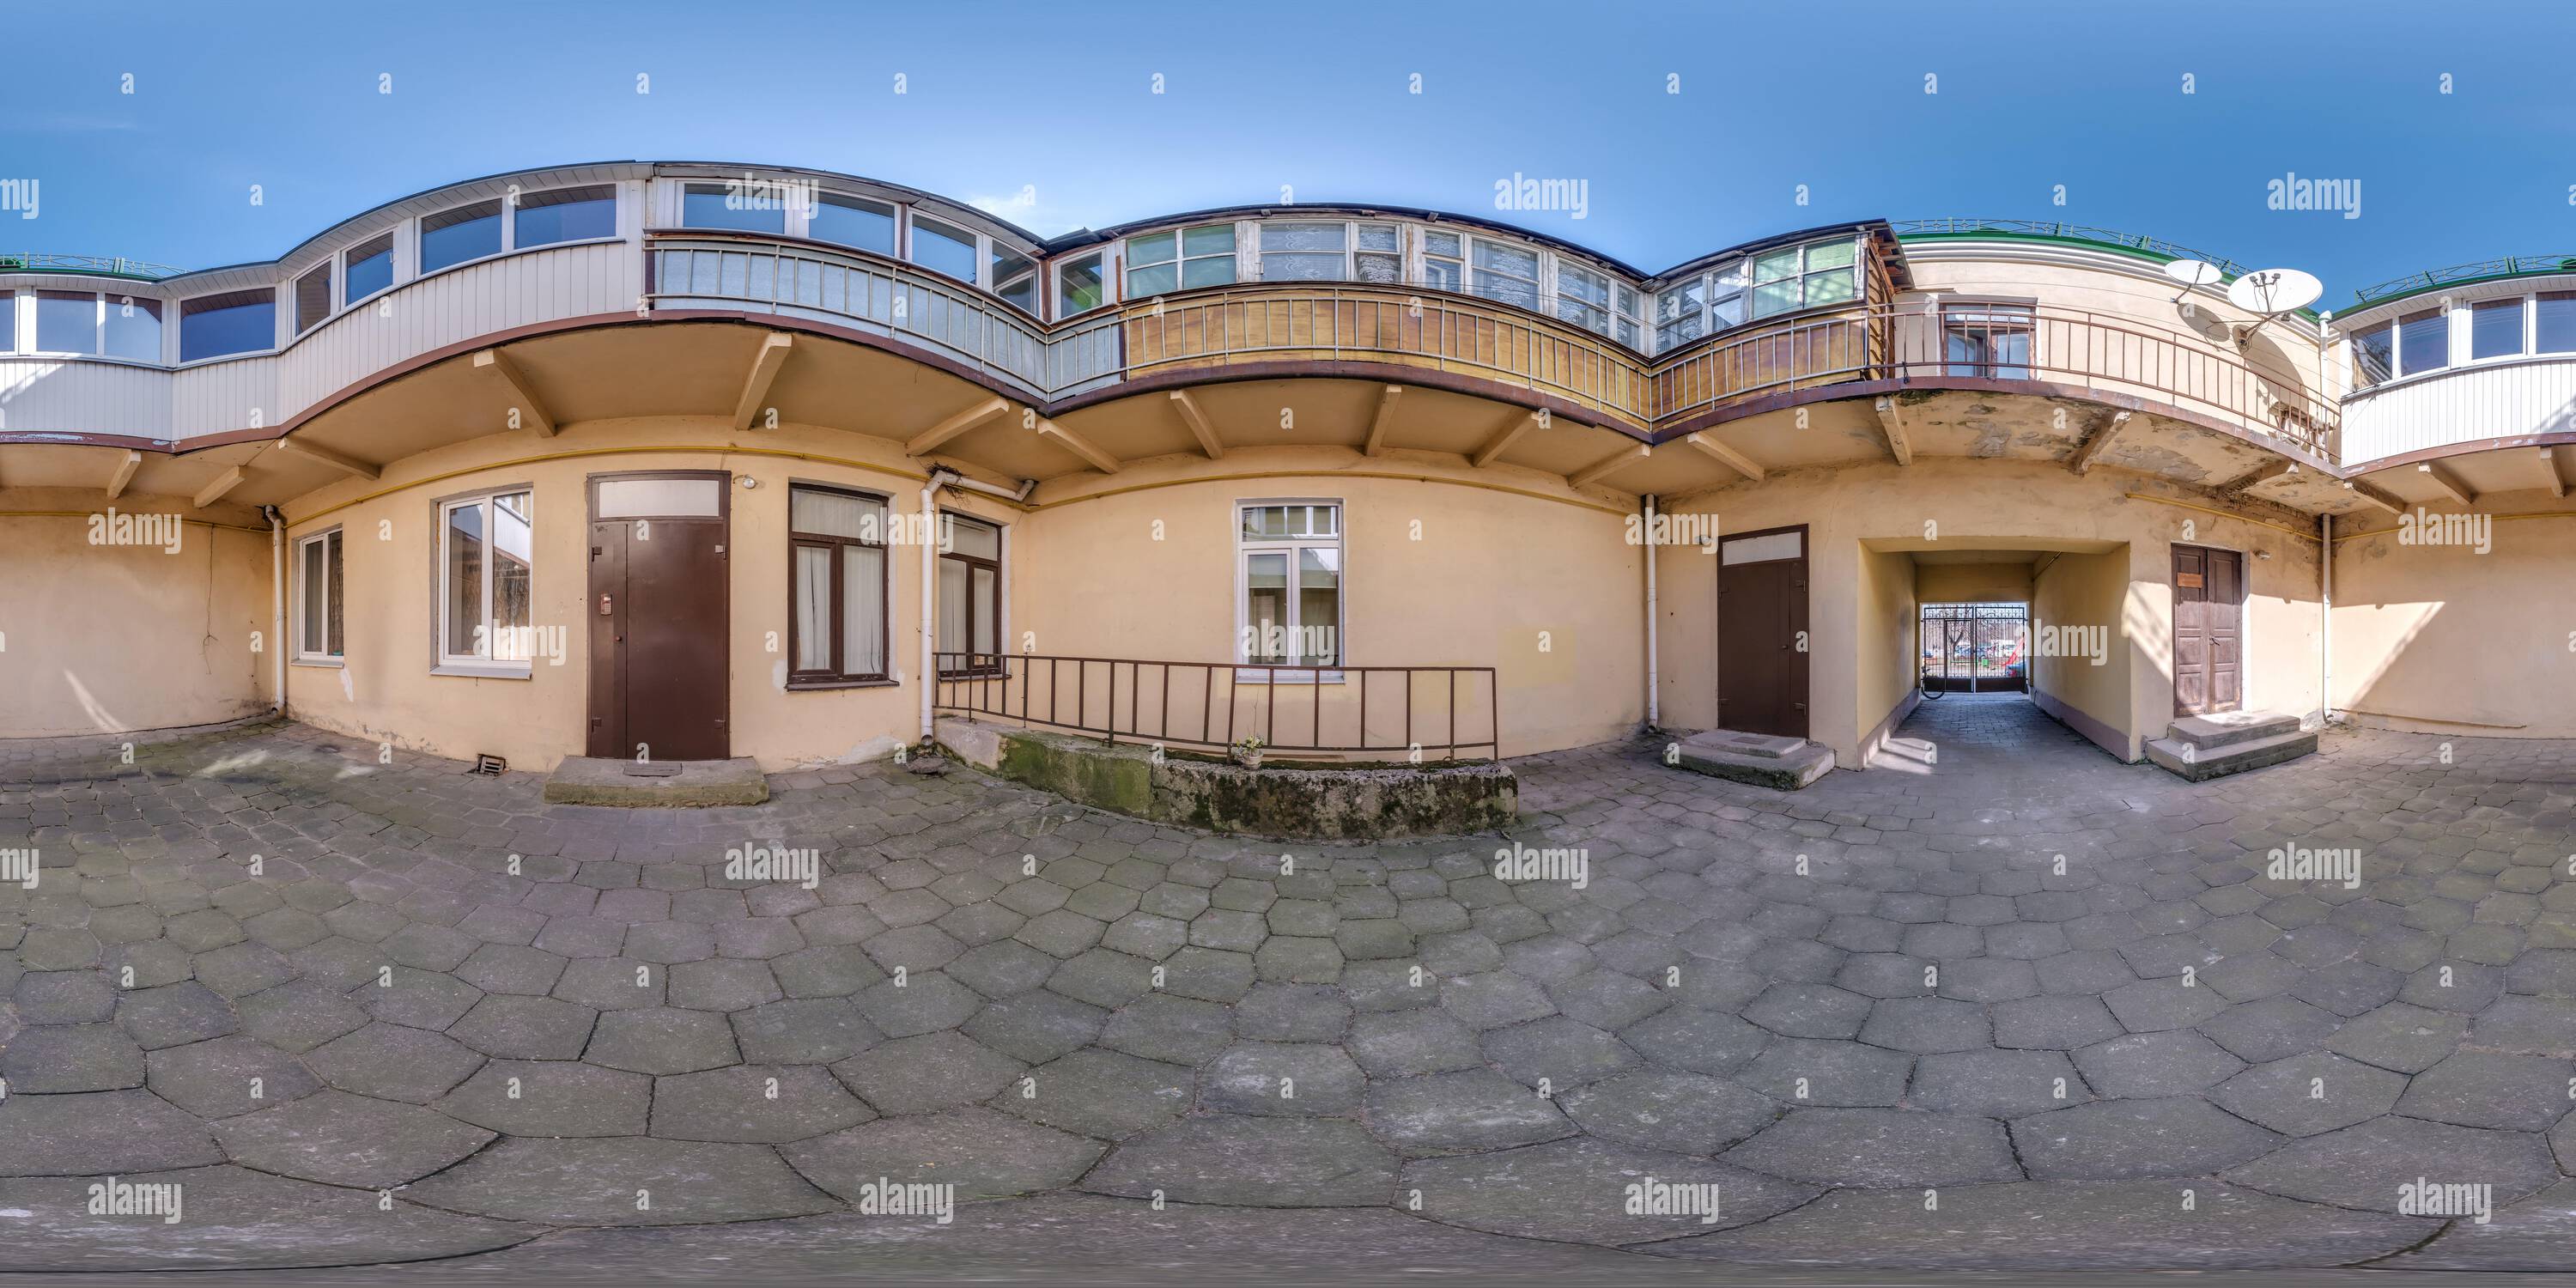 Vista de 360 grados de vista panorámica completa y esférica hdri 360 cerca  de casas antiguas en un patio estrecho o patio trasero de la ciudad en  proyección equirectangular, lista f - Alamy